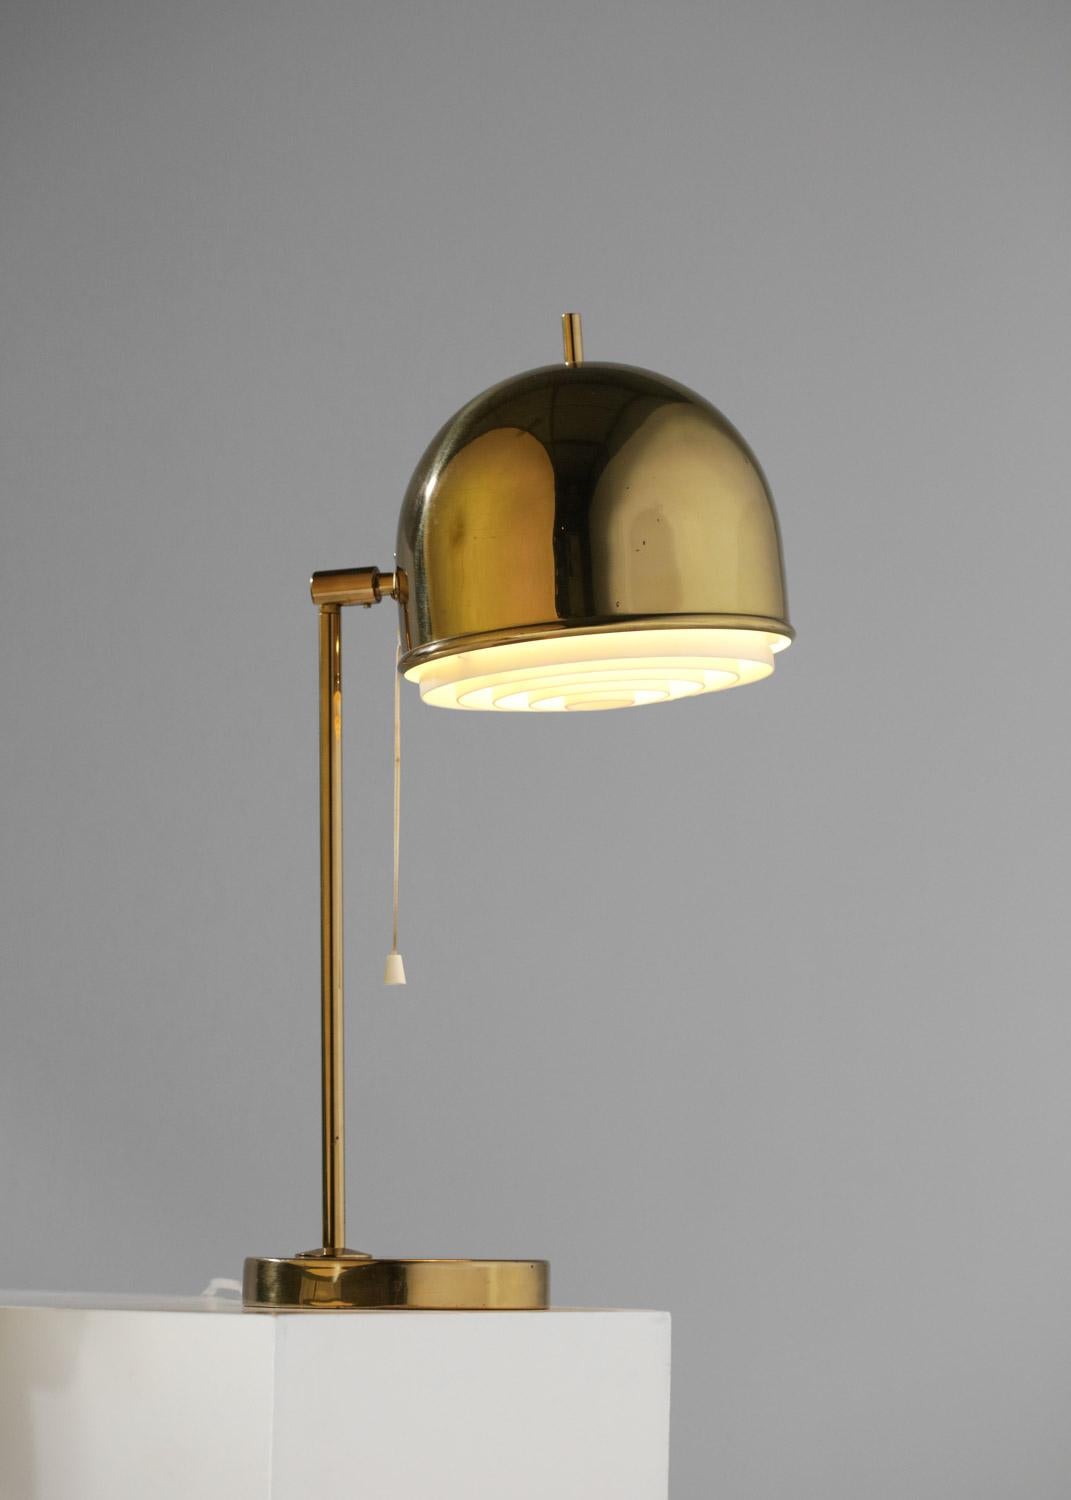 Lampe de bureau ou de chevet des années 60 de l'éditeur suédois Bergbom, modèle B-075.  Structure en laiton massif et abat-jour réglable, avec un réflecteur en plastique blanc. Très bel état vintage, à noter que le réflecteur a été changé dans le